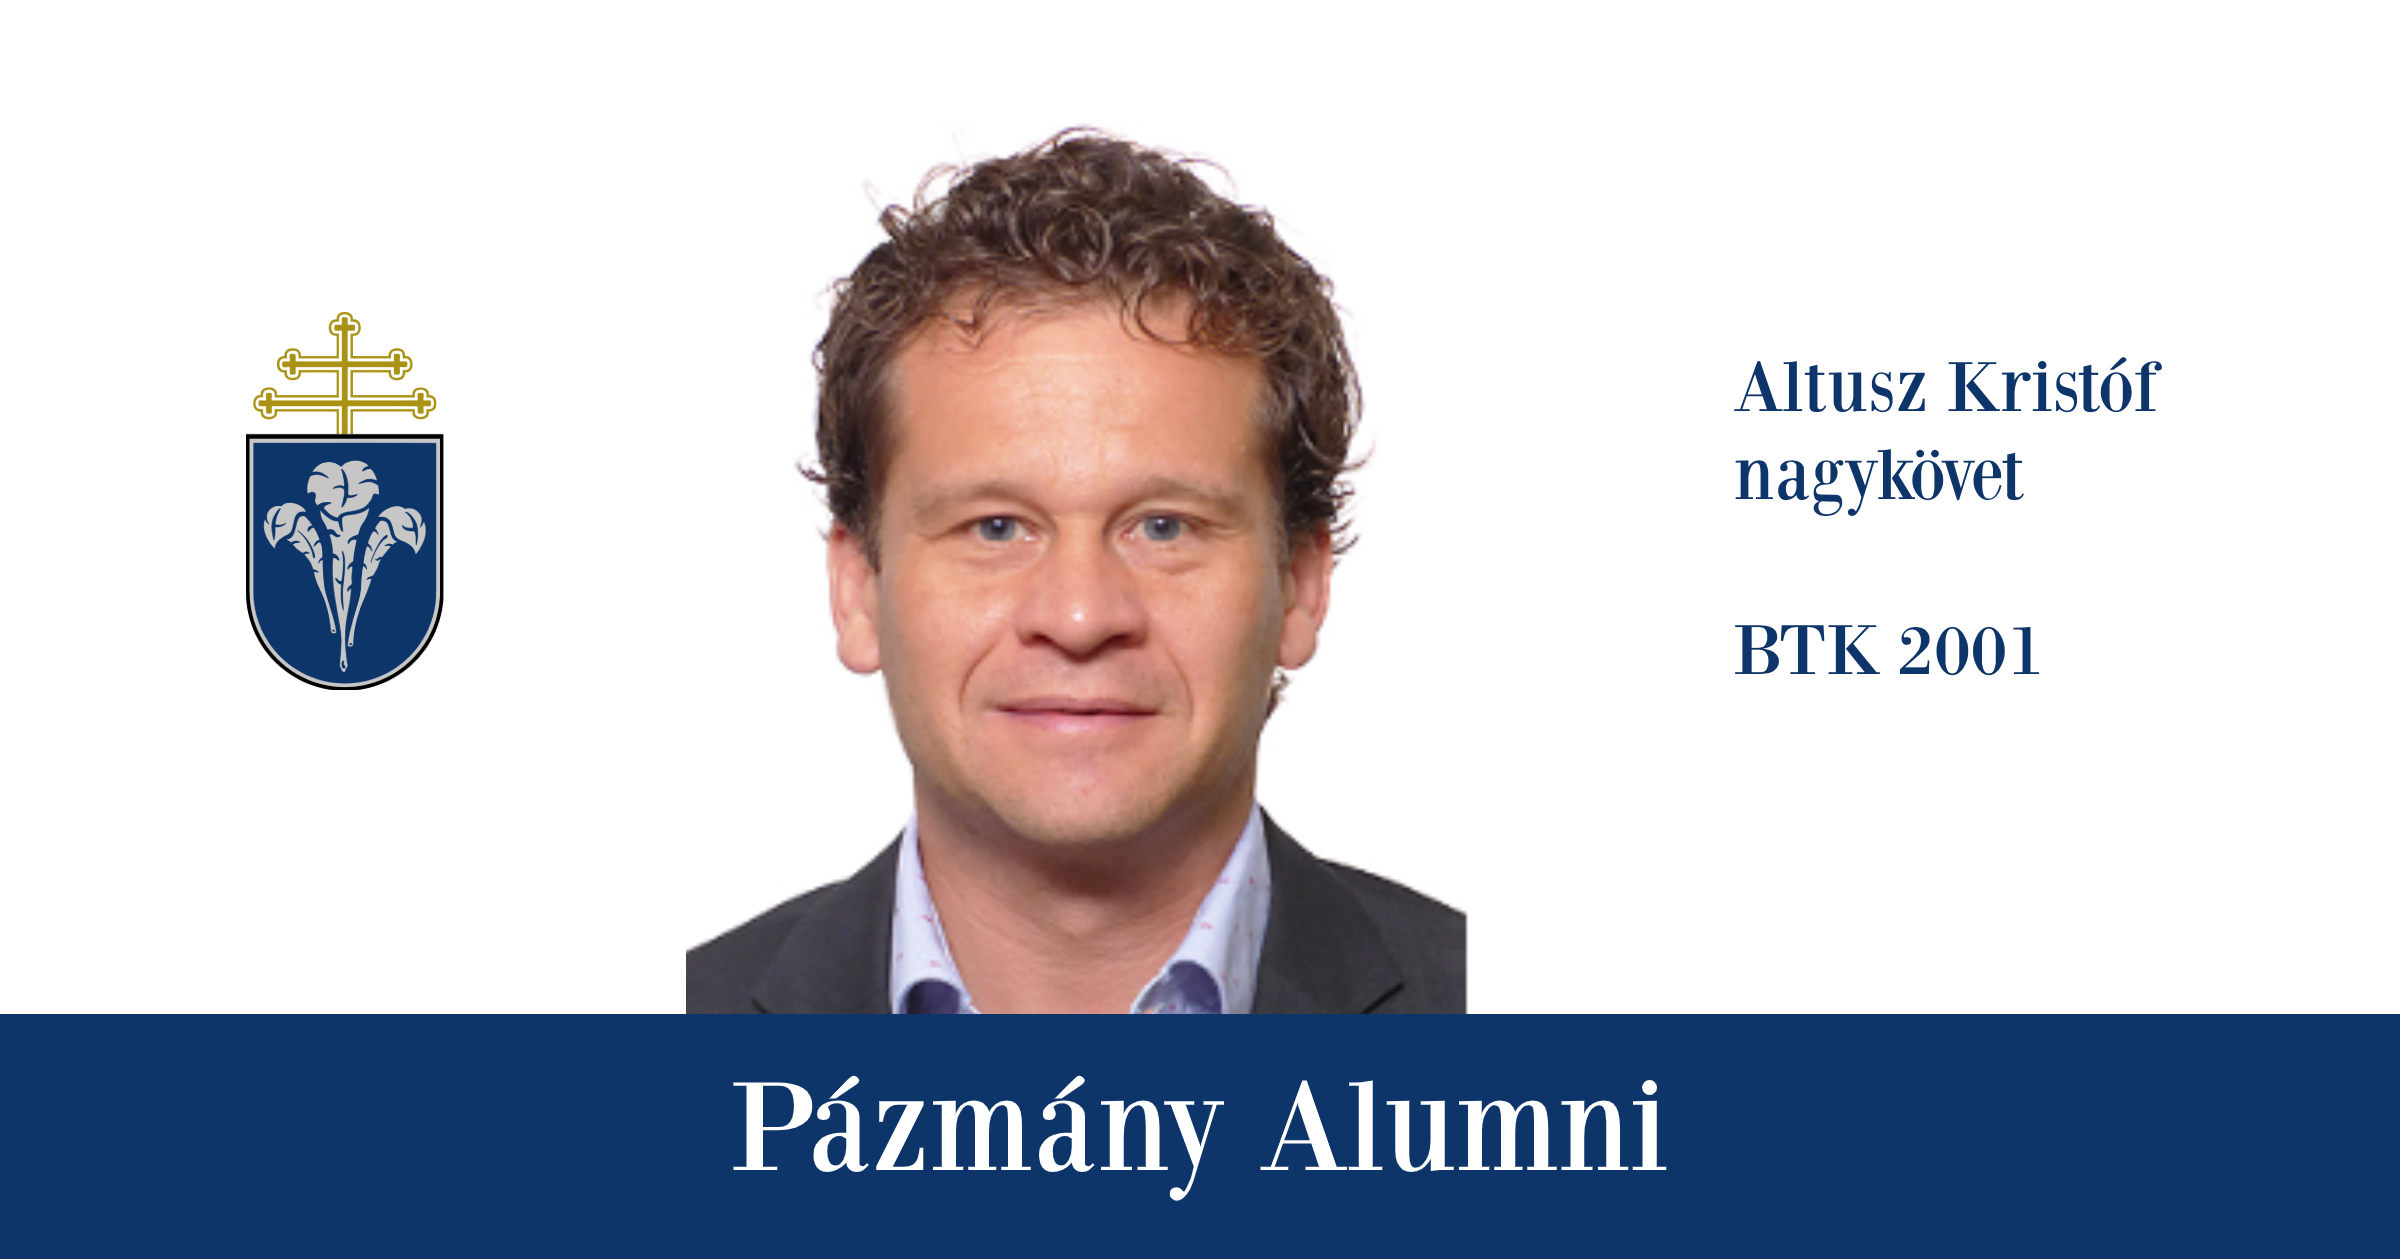 Pázmány Alumni: interjú Altusz Kristóffal, a BTK egykori hallgatójával